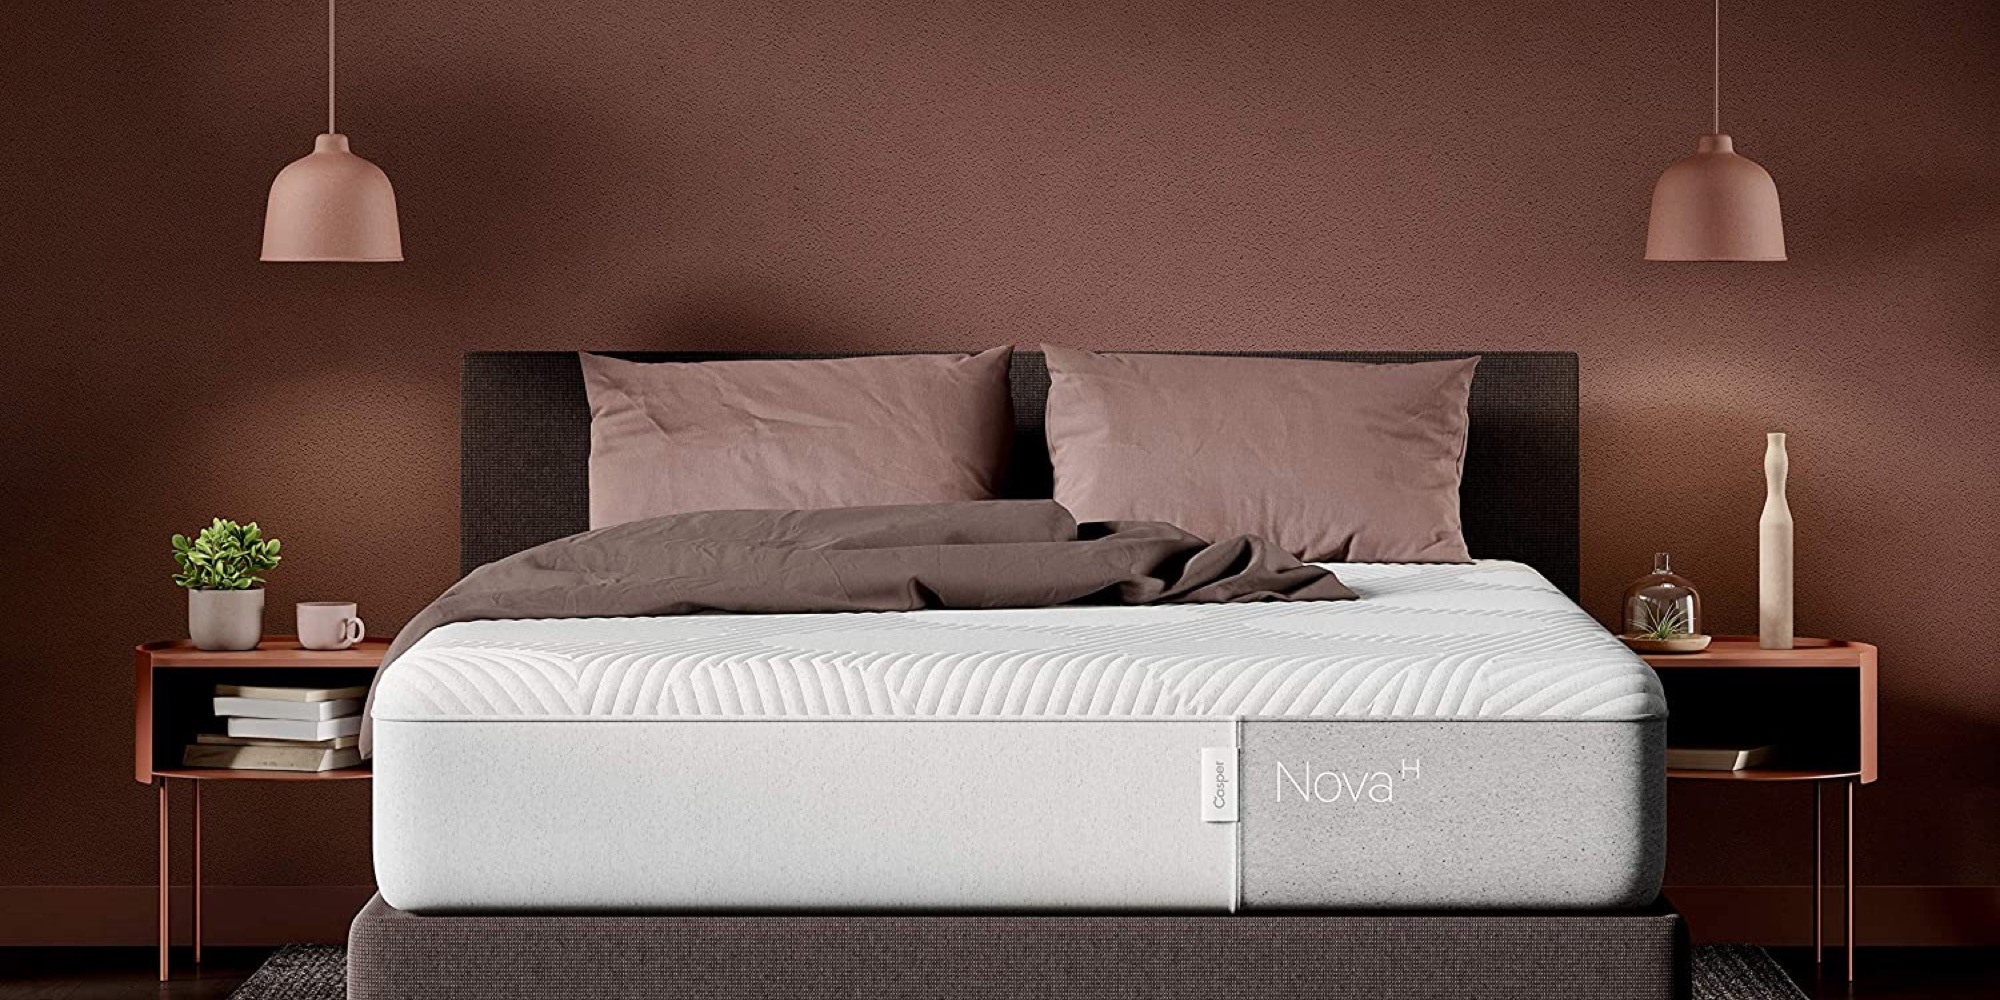 casper mattress for roll away bed